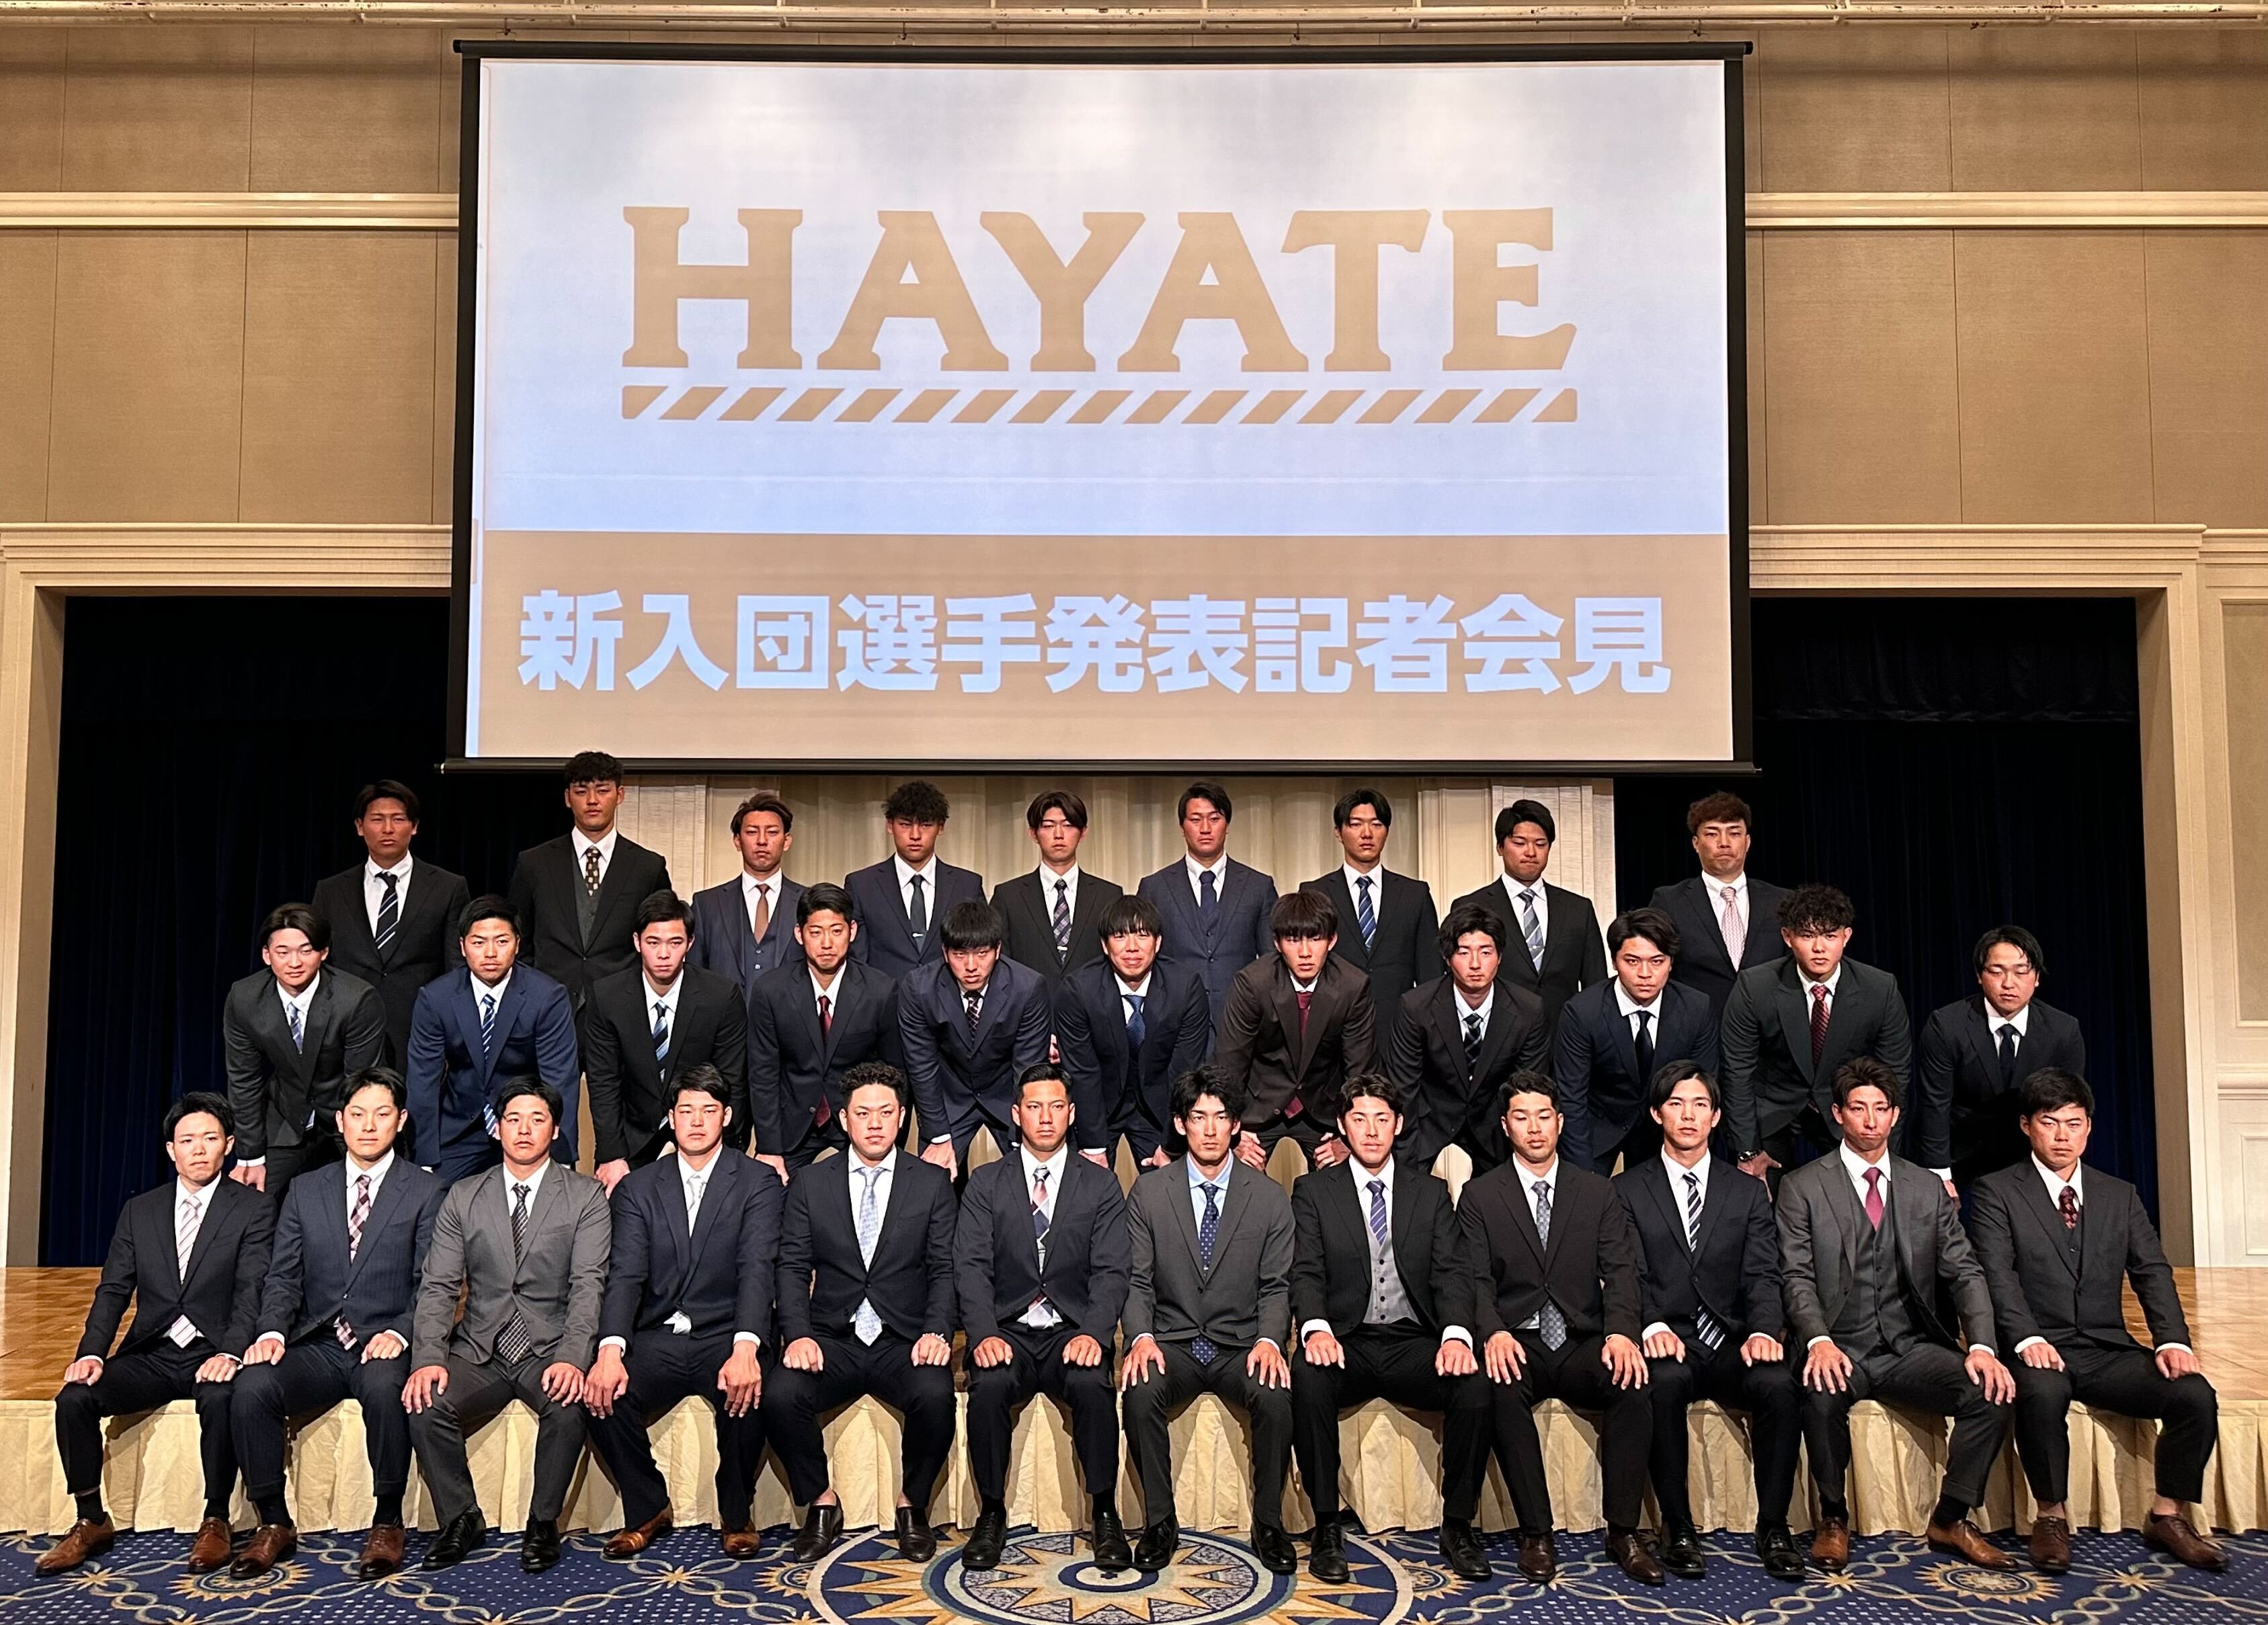 ハヤテグループ - Hayate Group